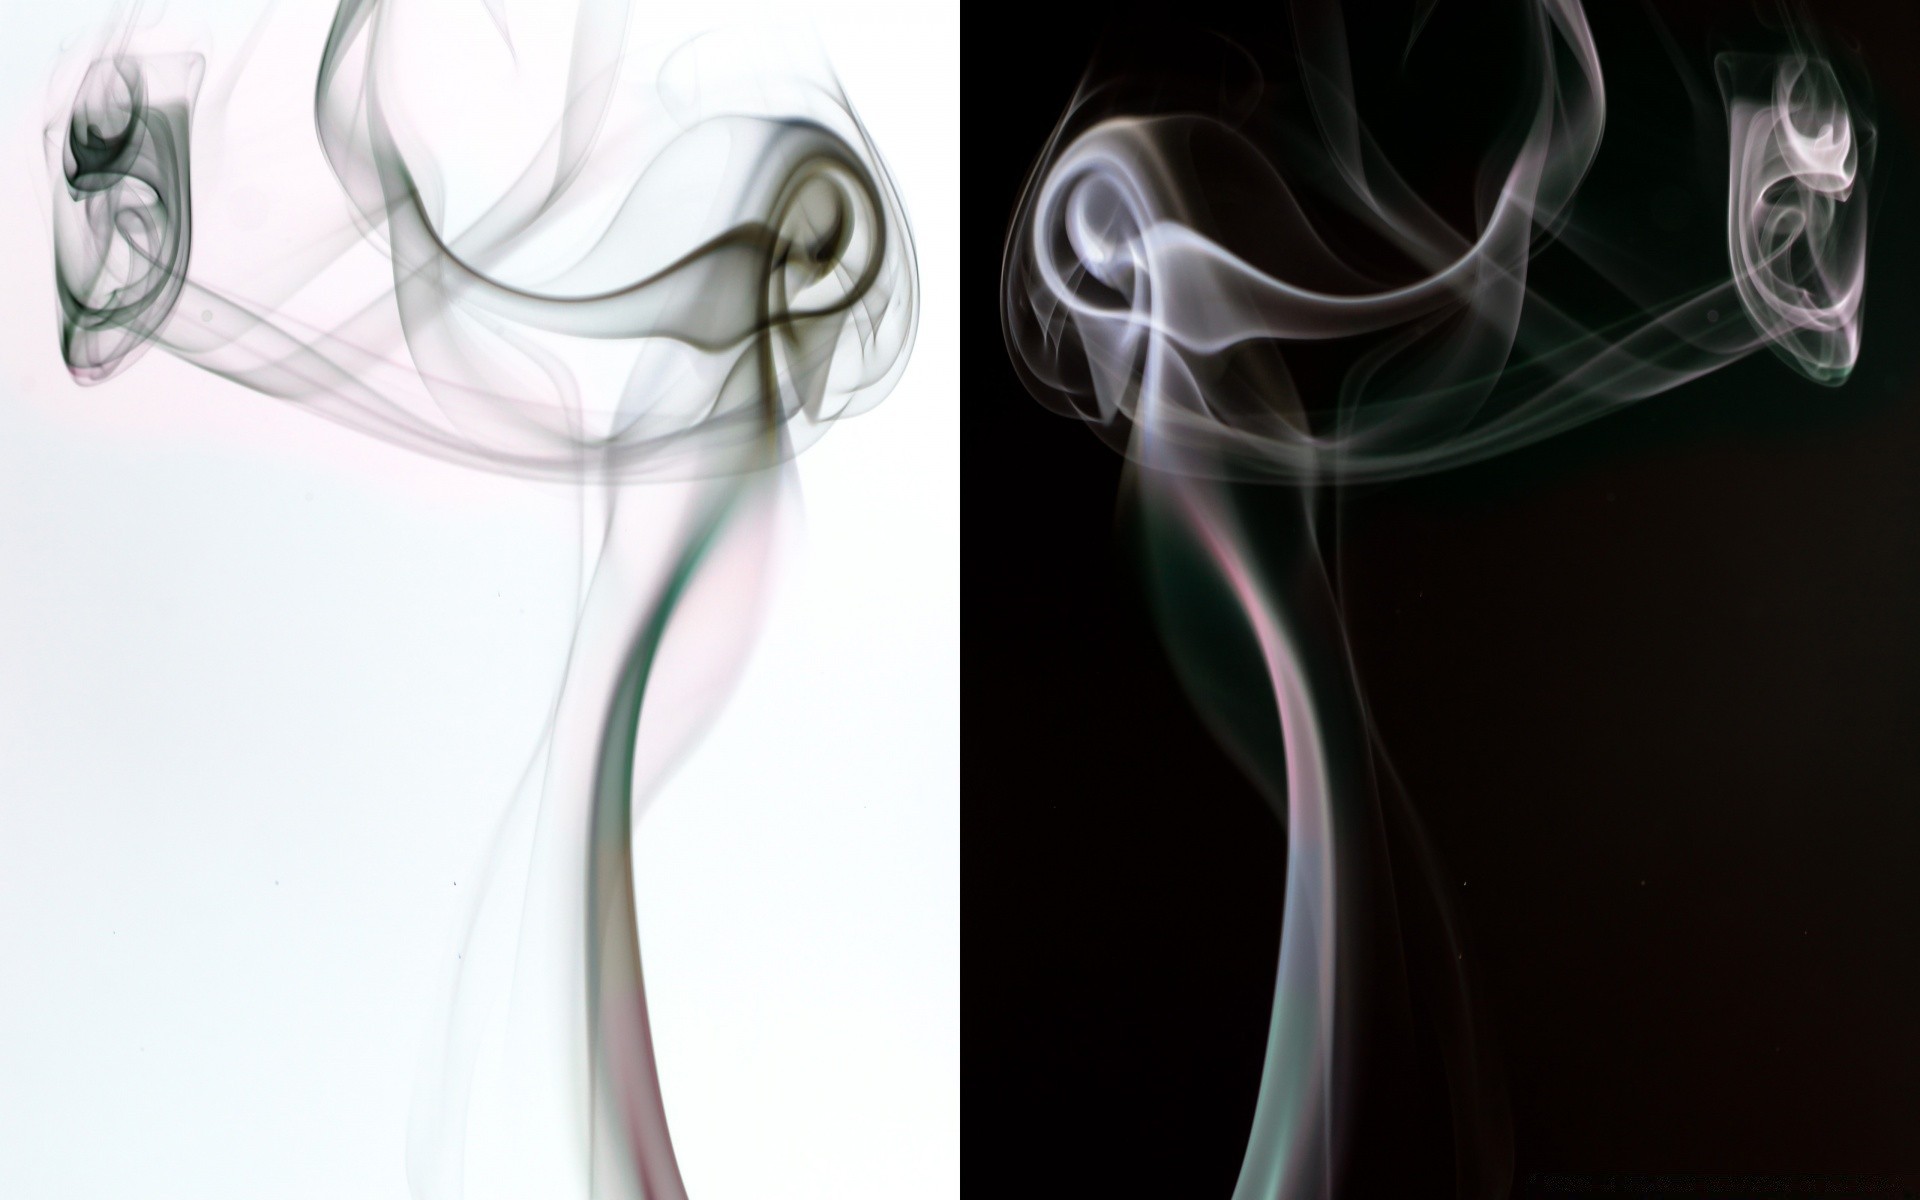 креатив фимиам дым туман пара кривая гладкая динамические сожгли волна слик запах след таинственный нежный движения аннотация пламя дымчатый формы